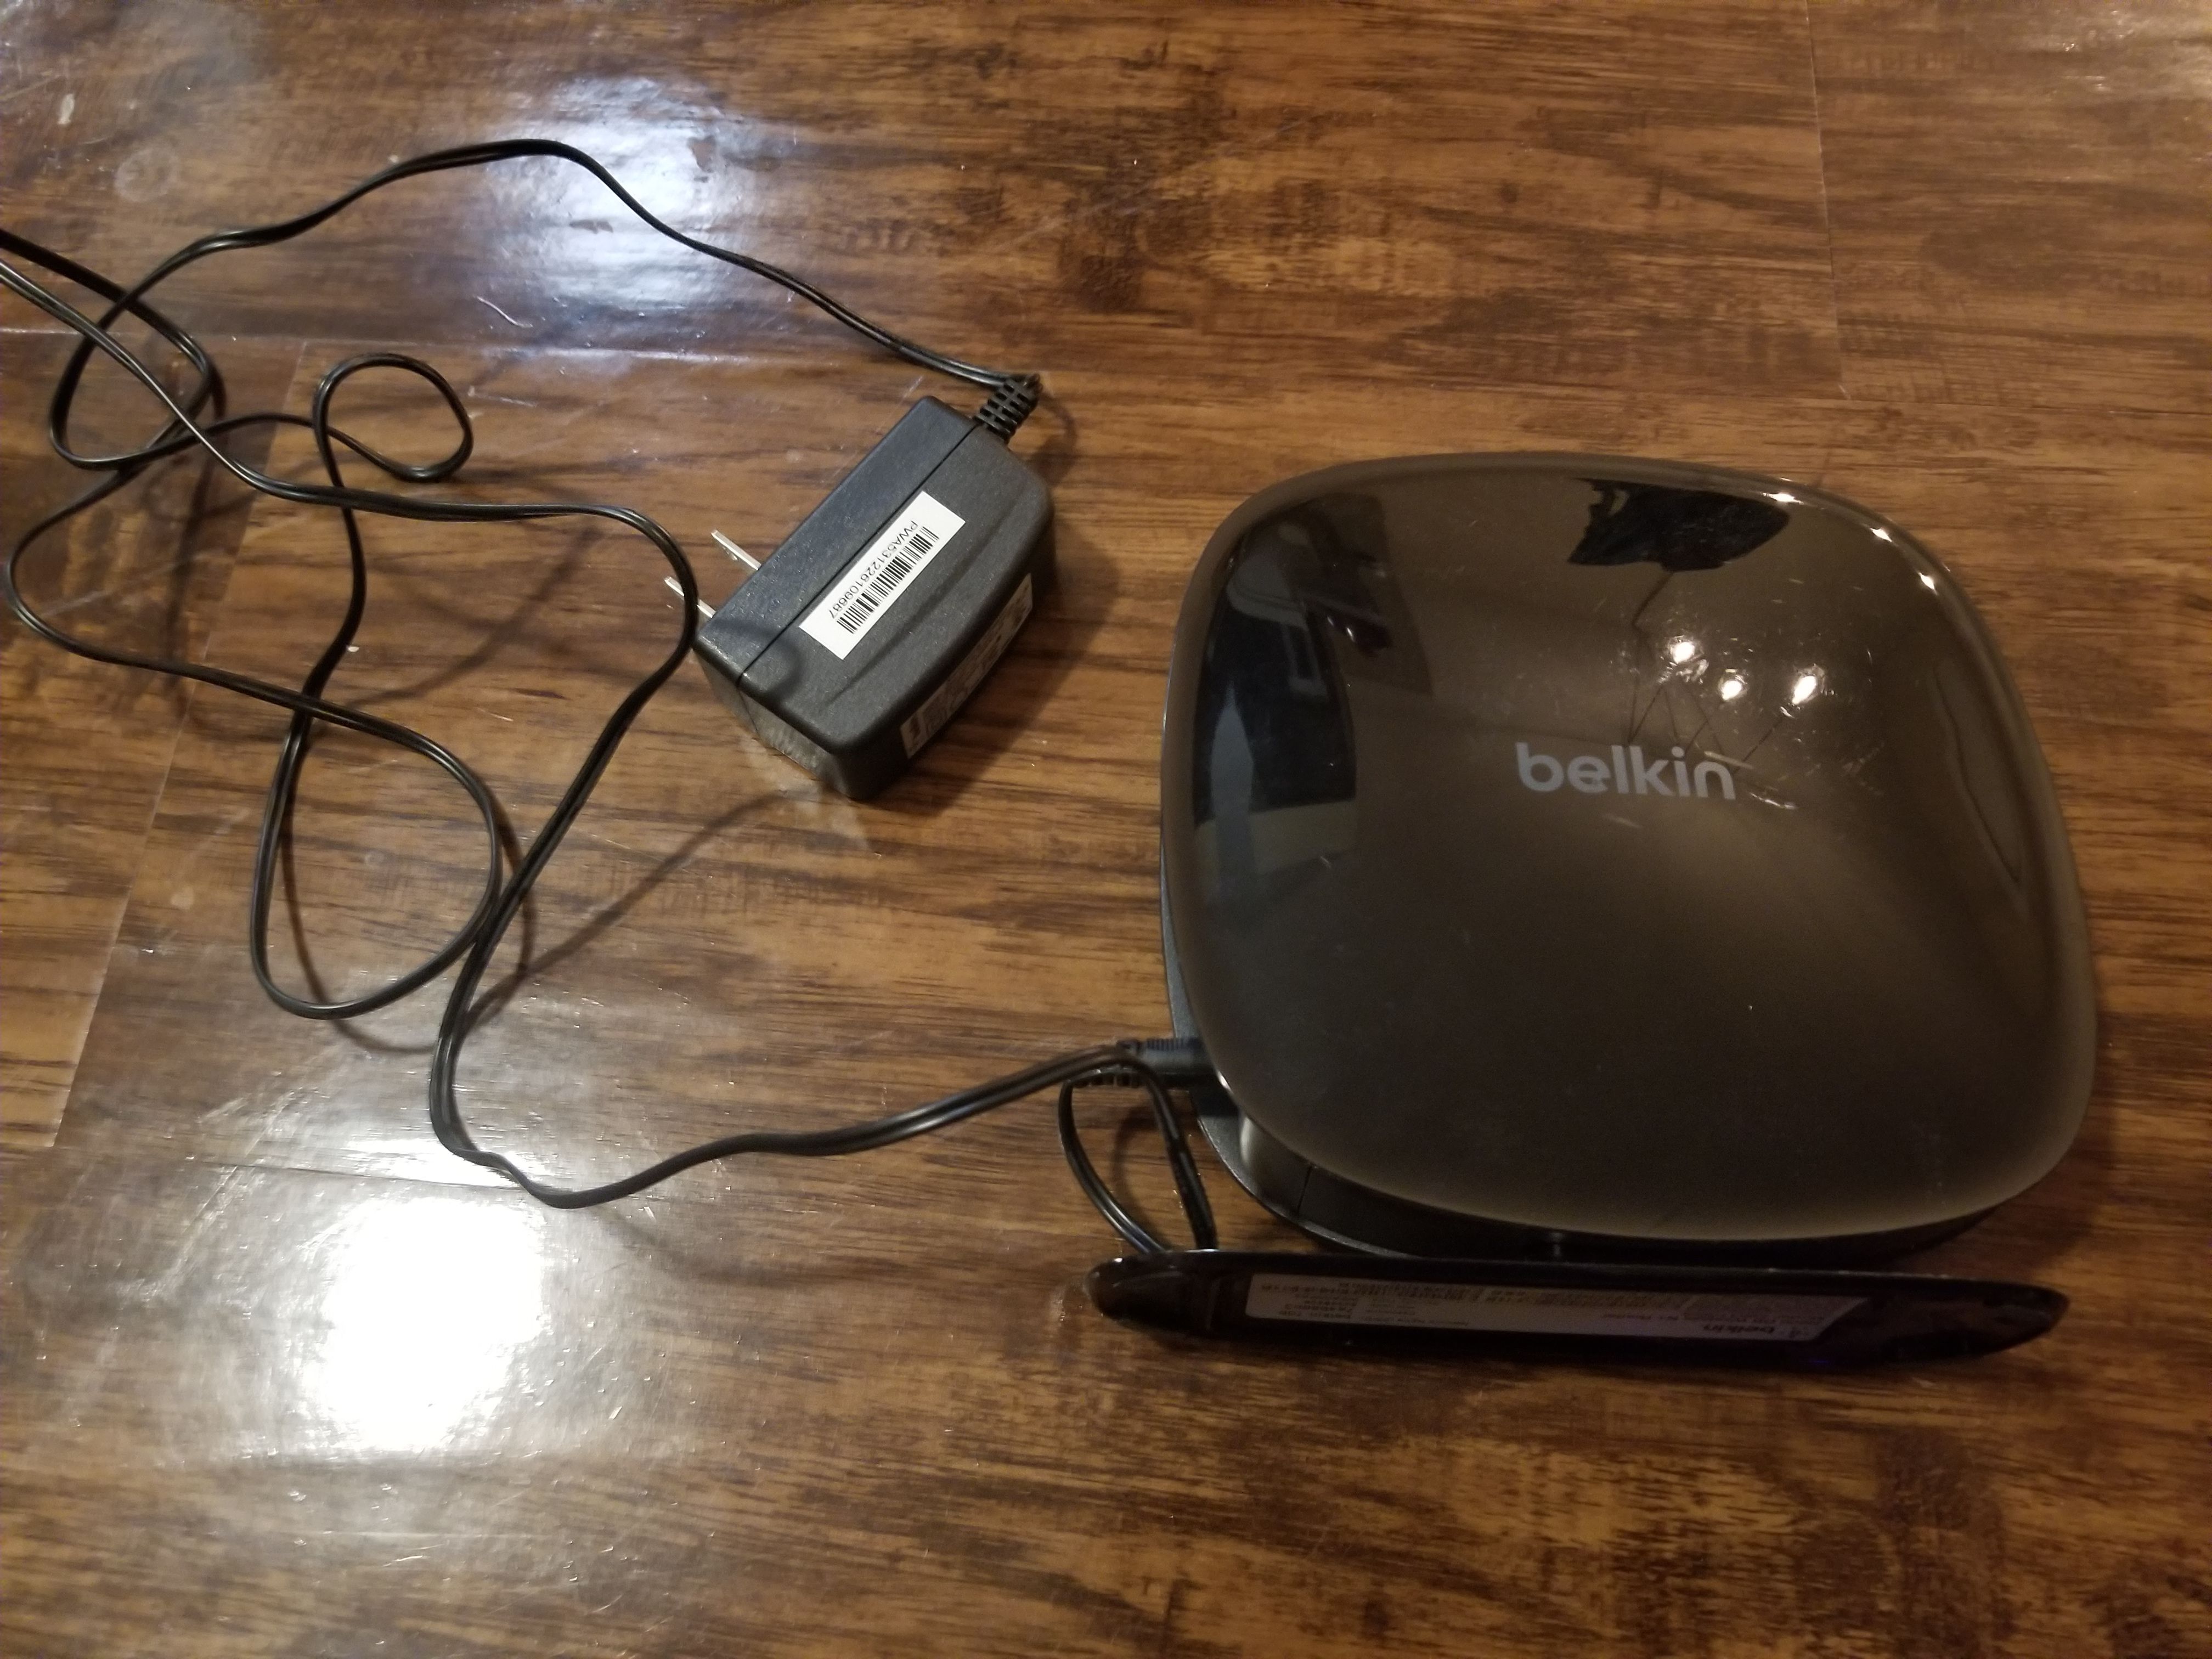 Belkin N600 Dual Band Wireless N+ Router